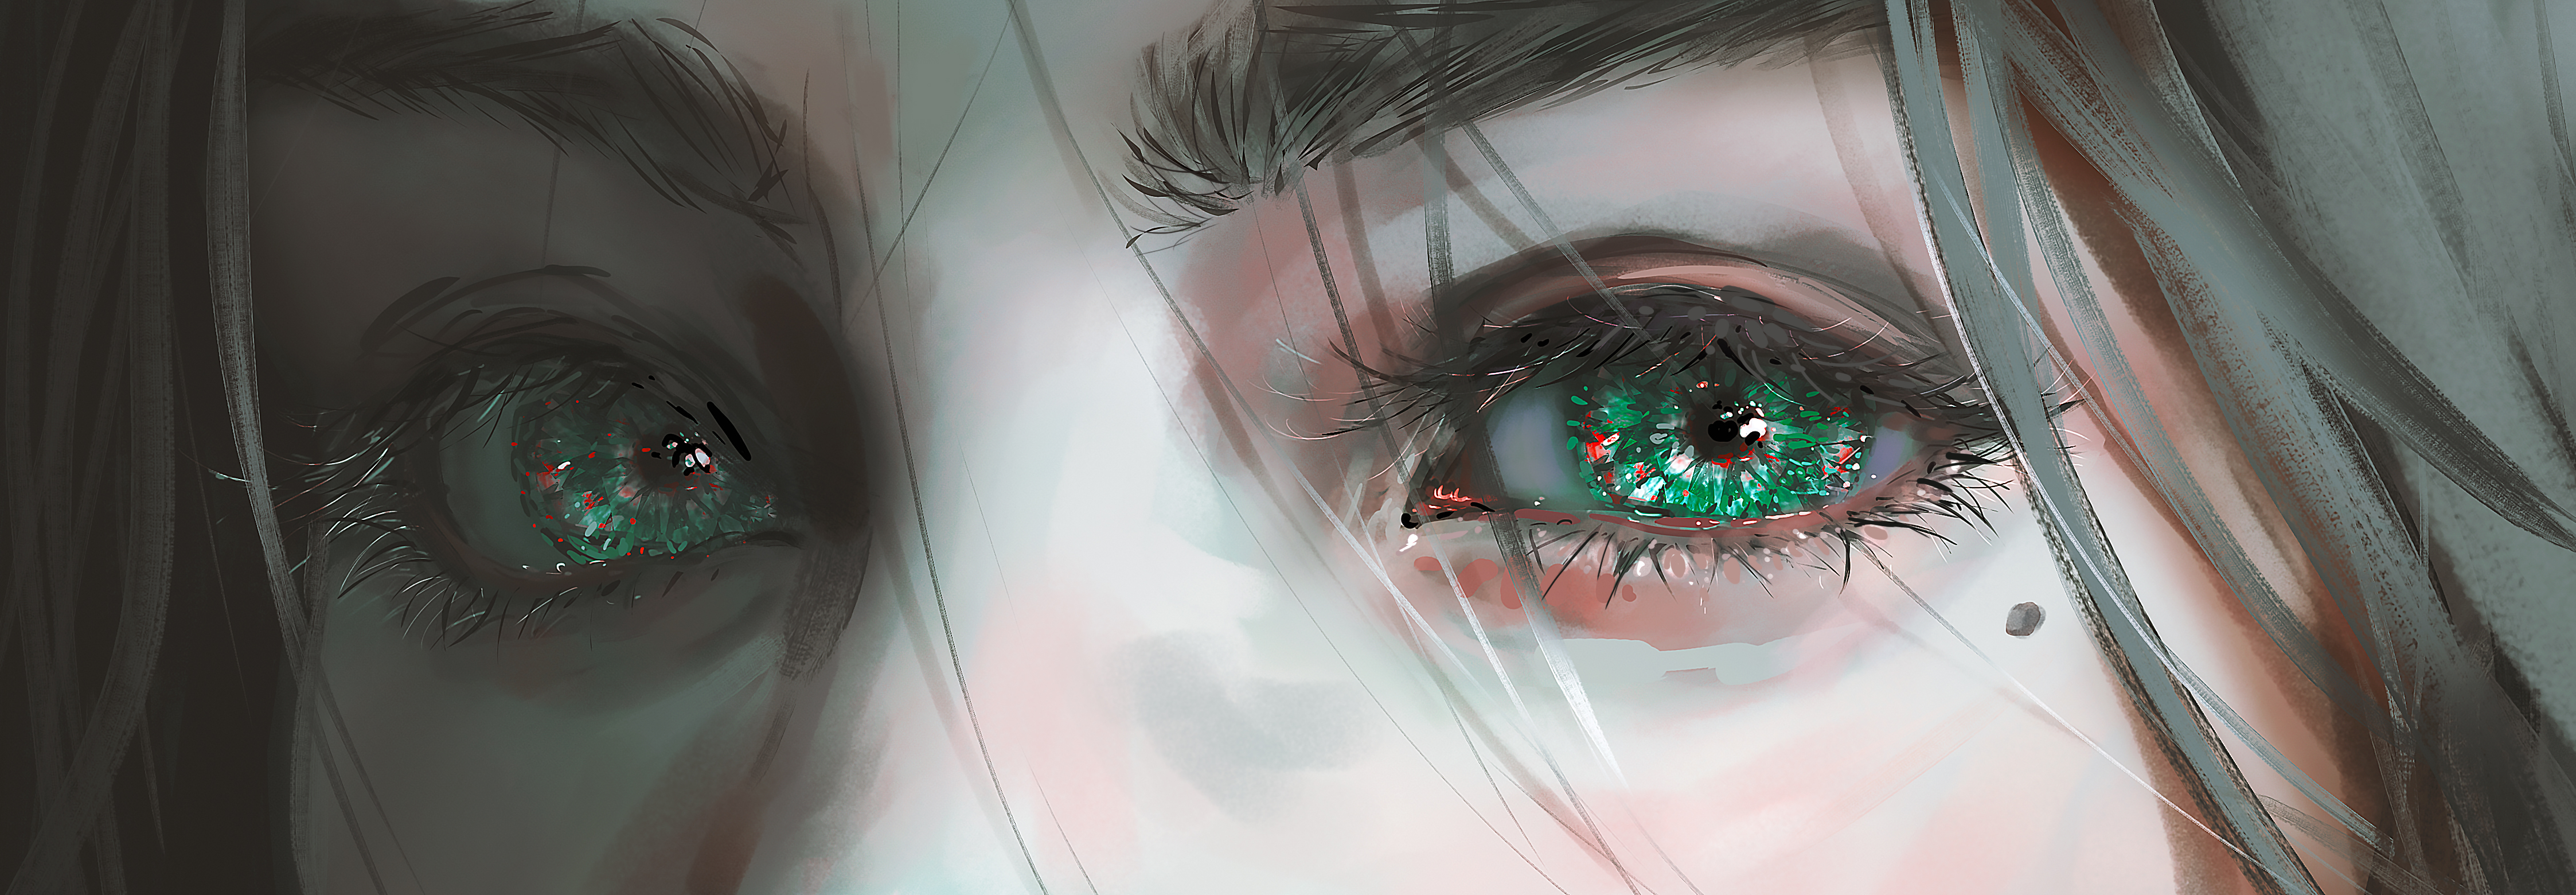 General 4492x1560 digital art fantasy art fantasy girl eyes green eyes artwork illustration Nixeu